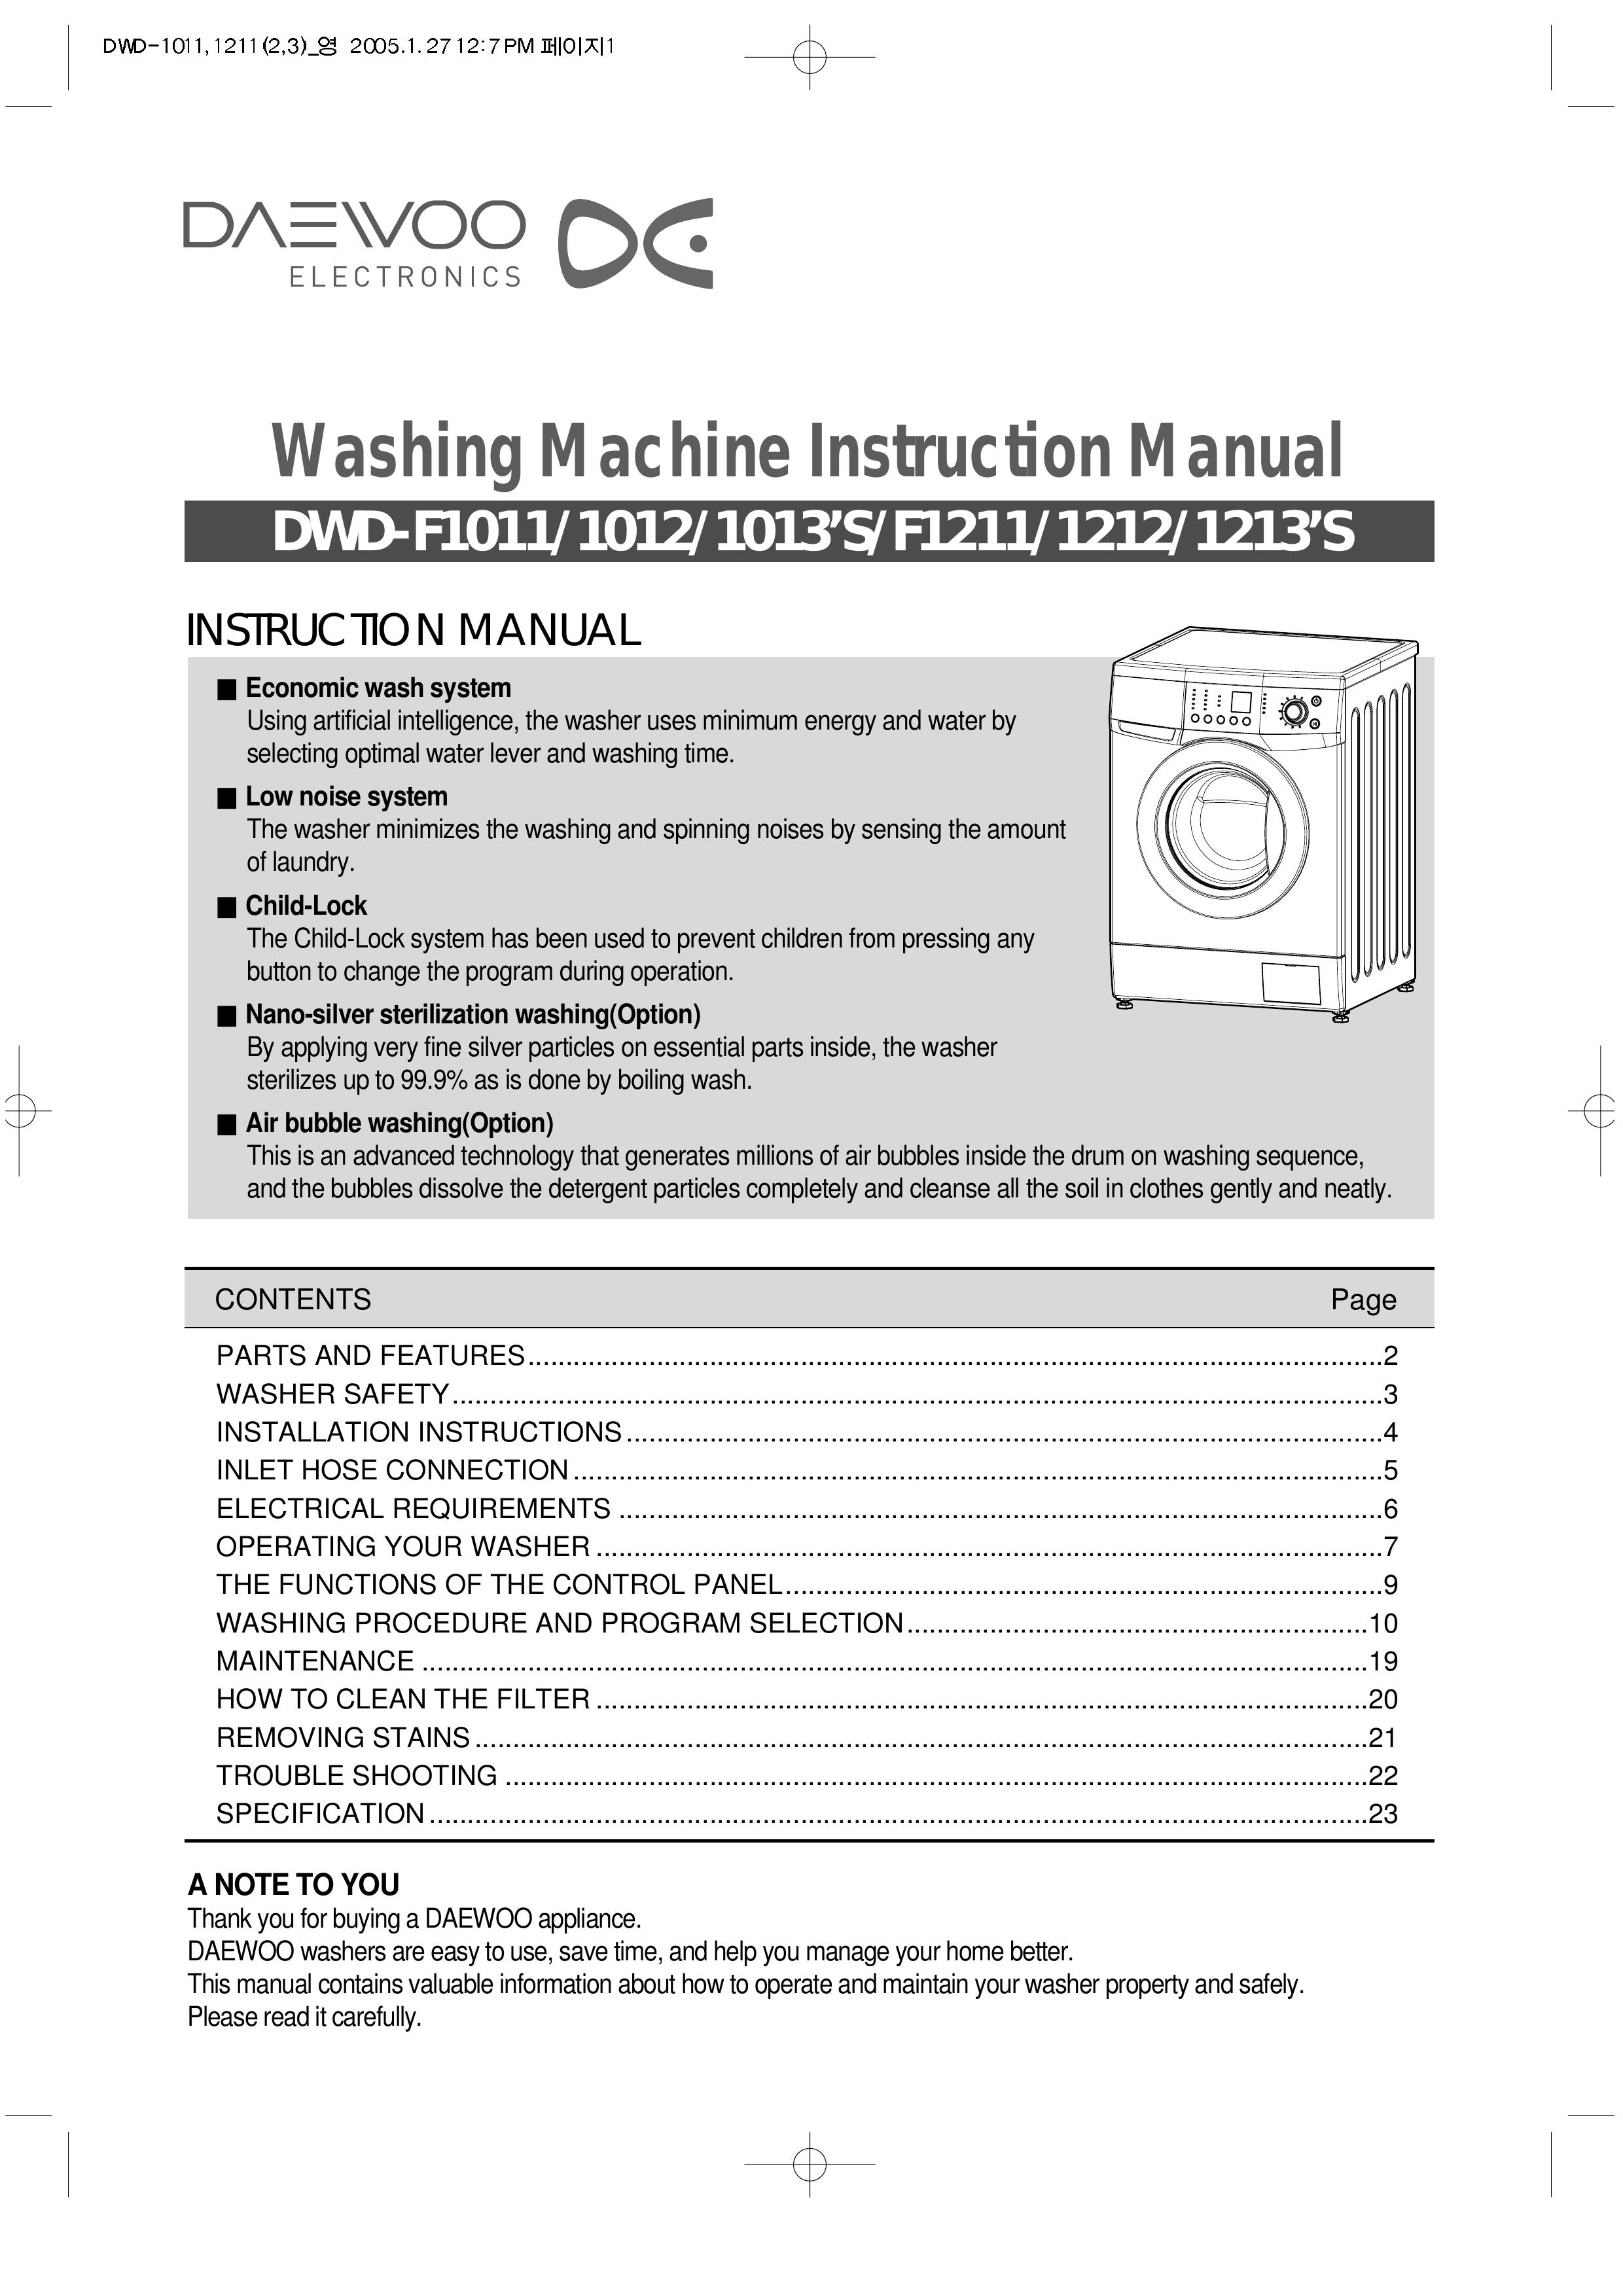 Daewoo DWD-F1212 Washer User Manual